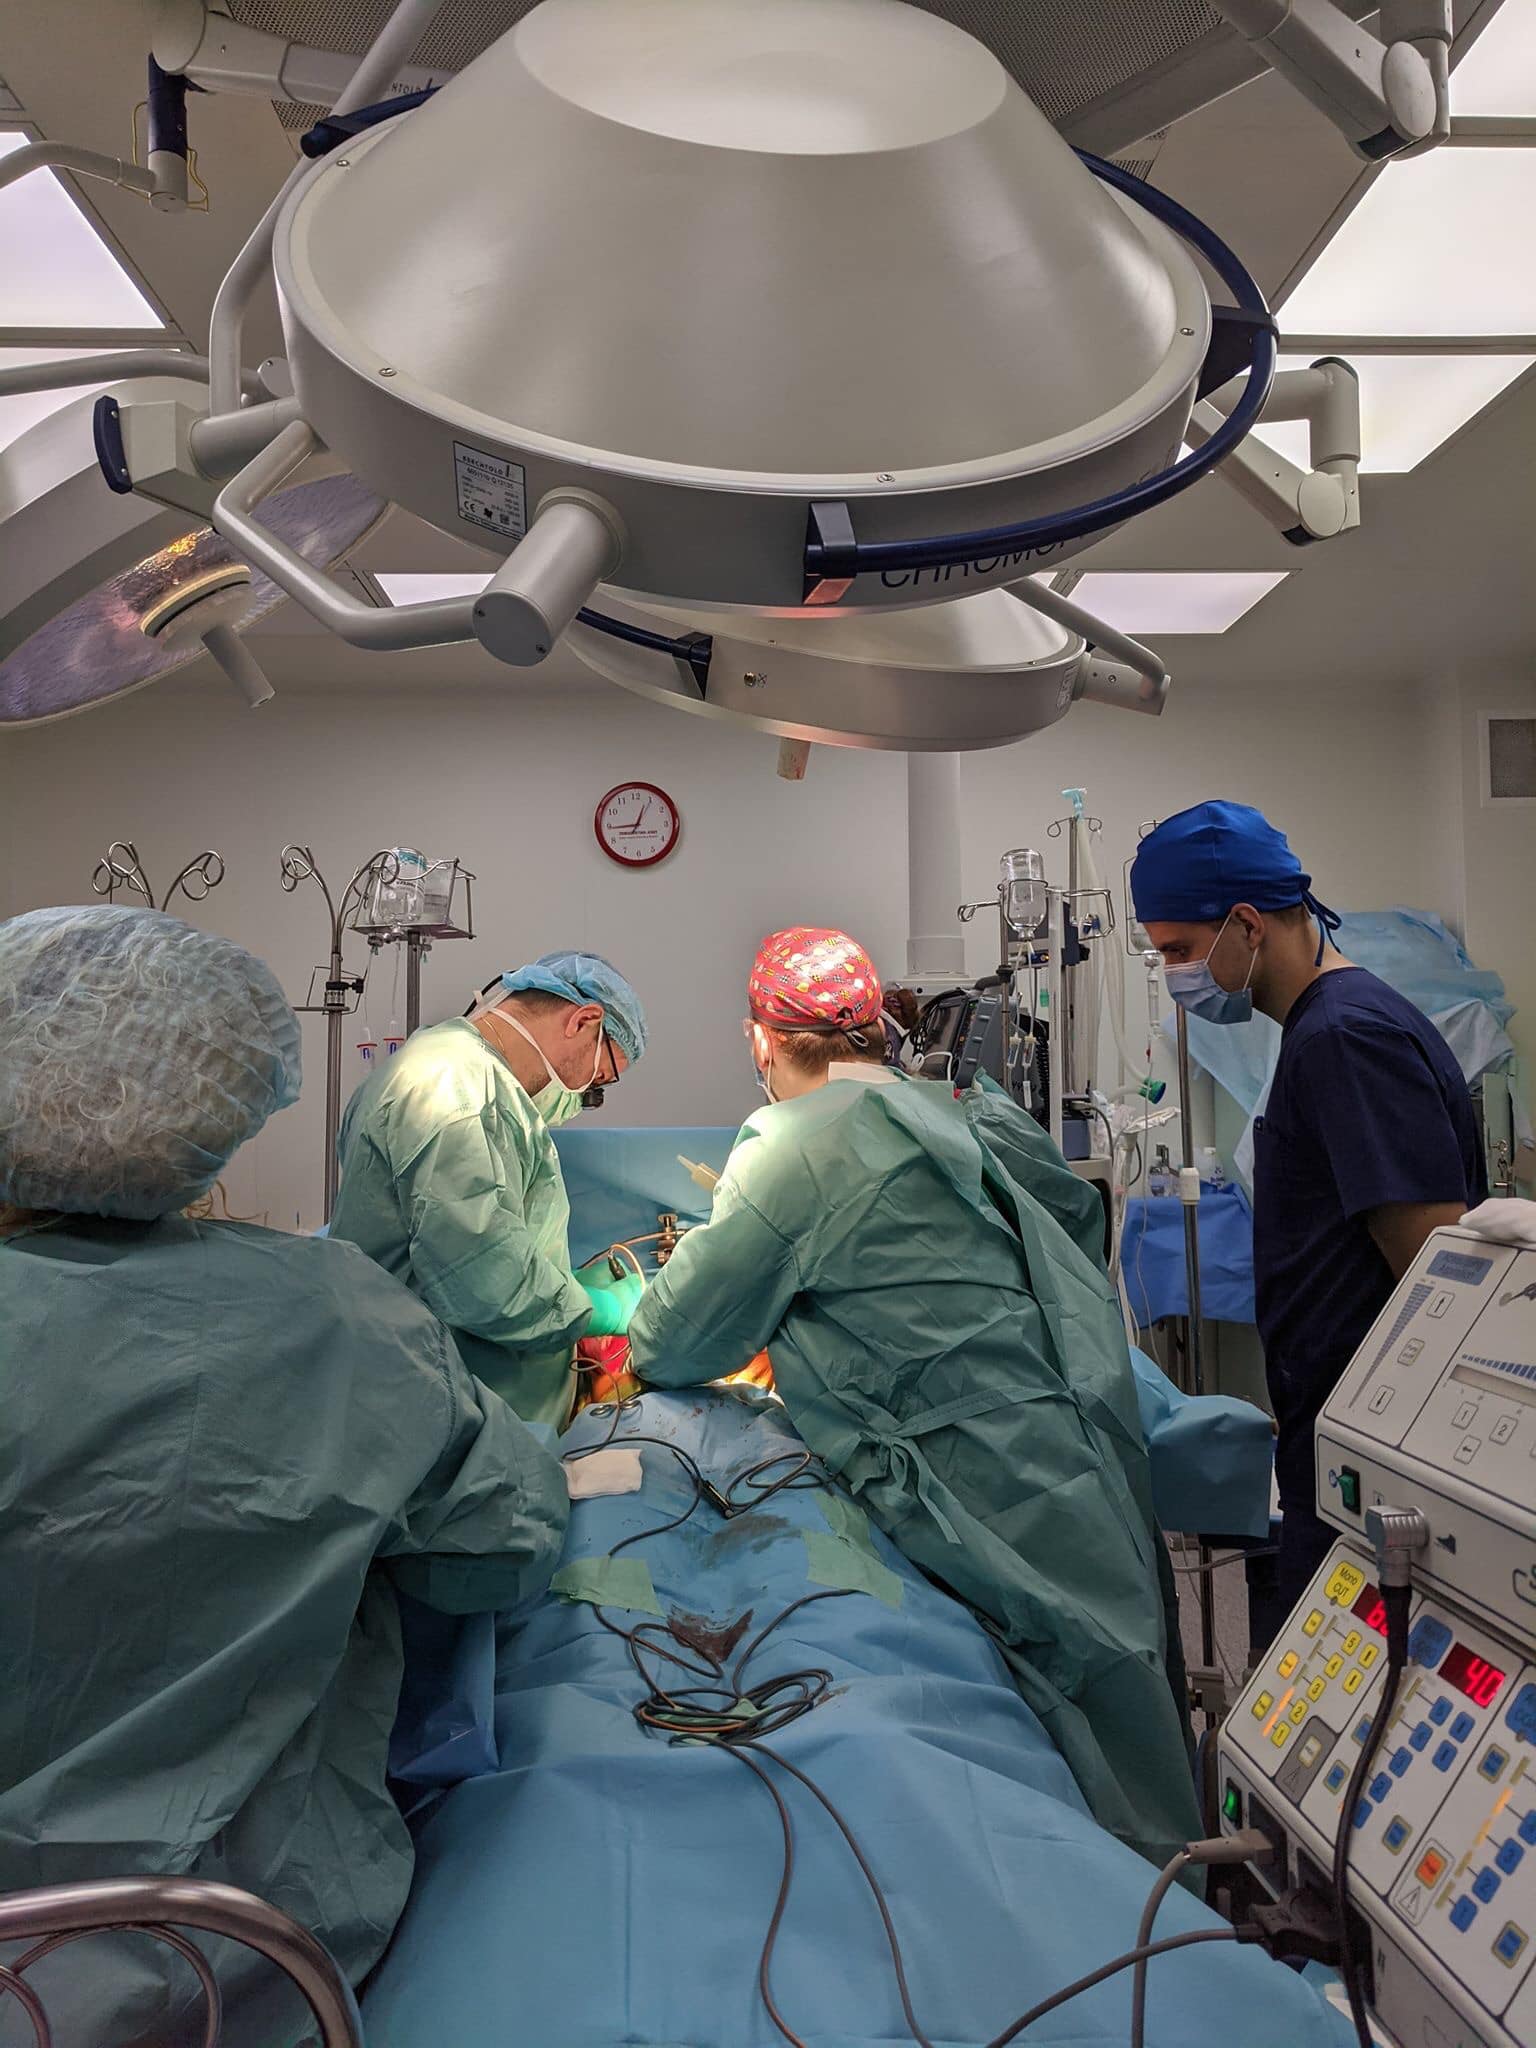 Найтяжча ніч у житті: в Києві батько дав згоду на трансплантацію органів загиблого сина